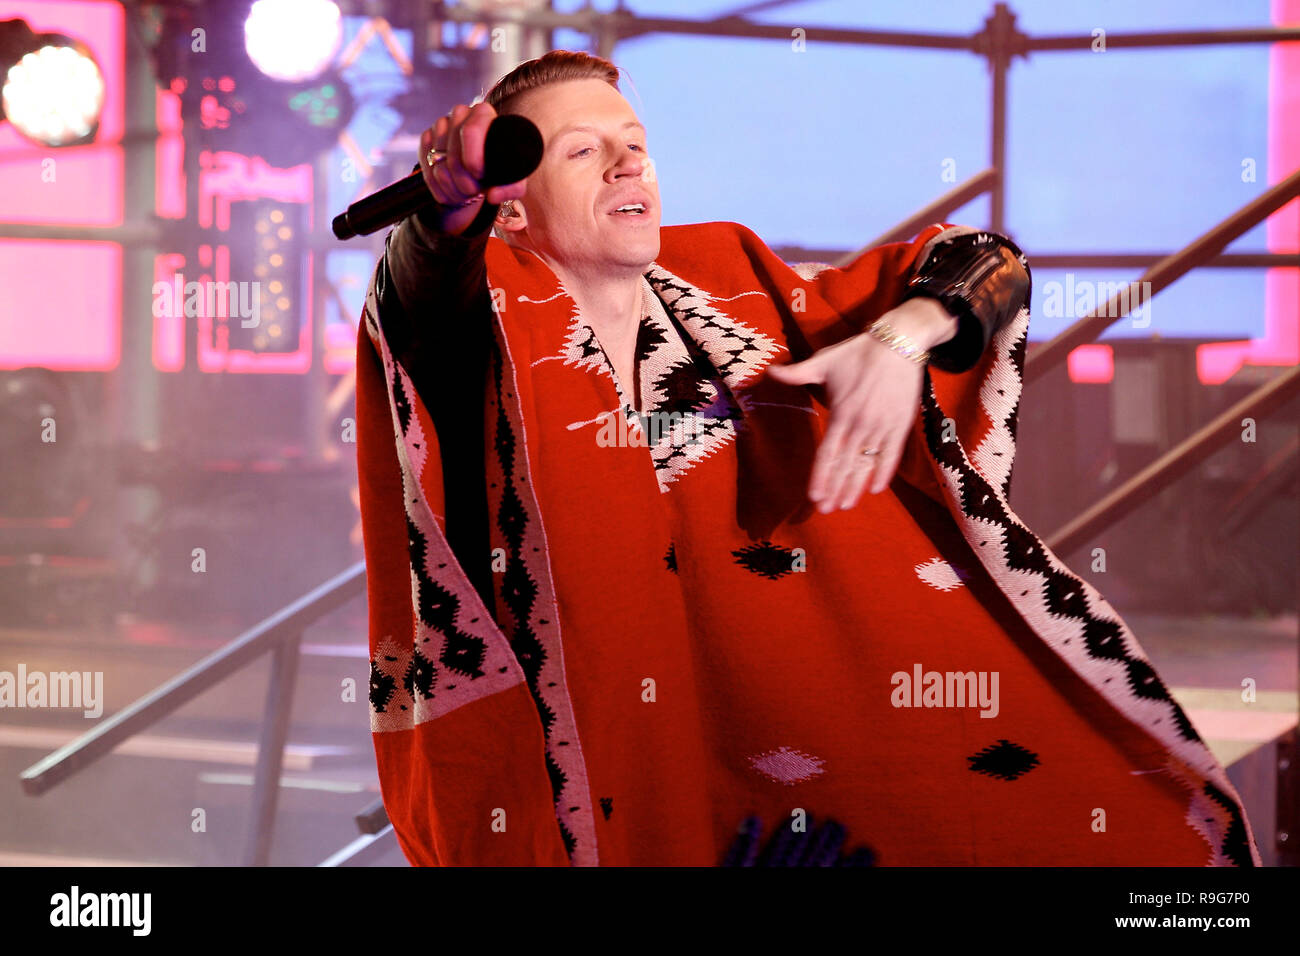 NEW YORK, NY - 31 dicembre: Macklemore esegue sul palco del Capodanno 2014 caduta sfera in festa a Times Square su dicembre 31, 2013 in New York City. (Foto di Steve Mack/S.D. Mack foto) Foto Stock